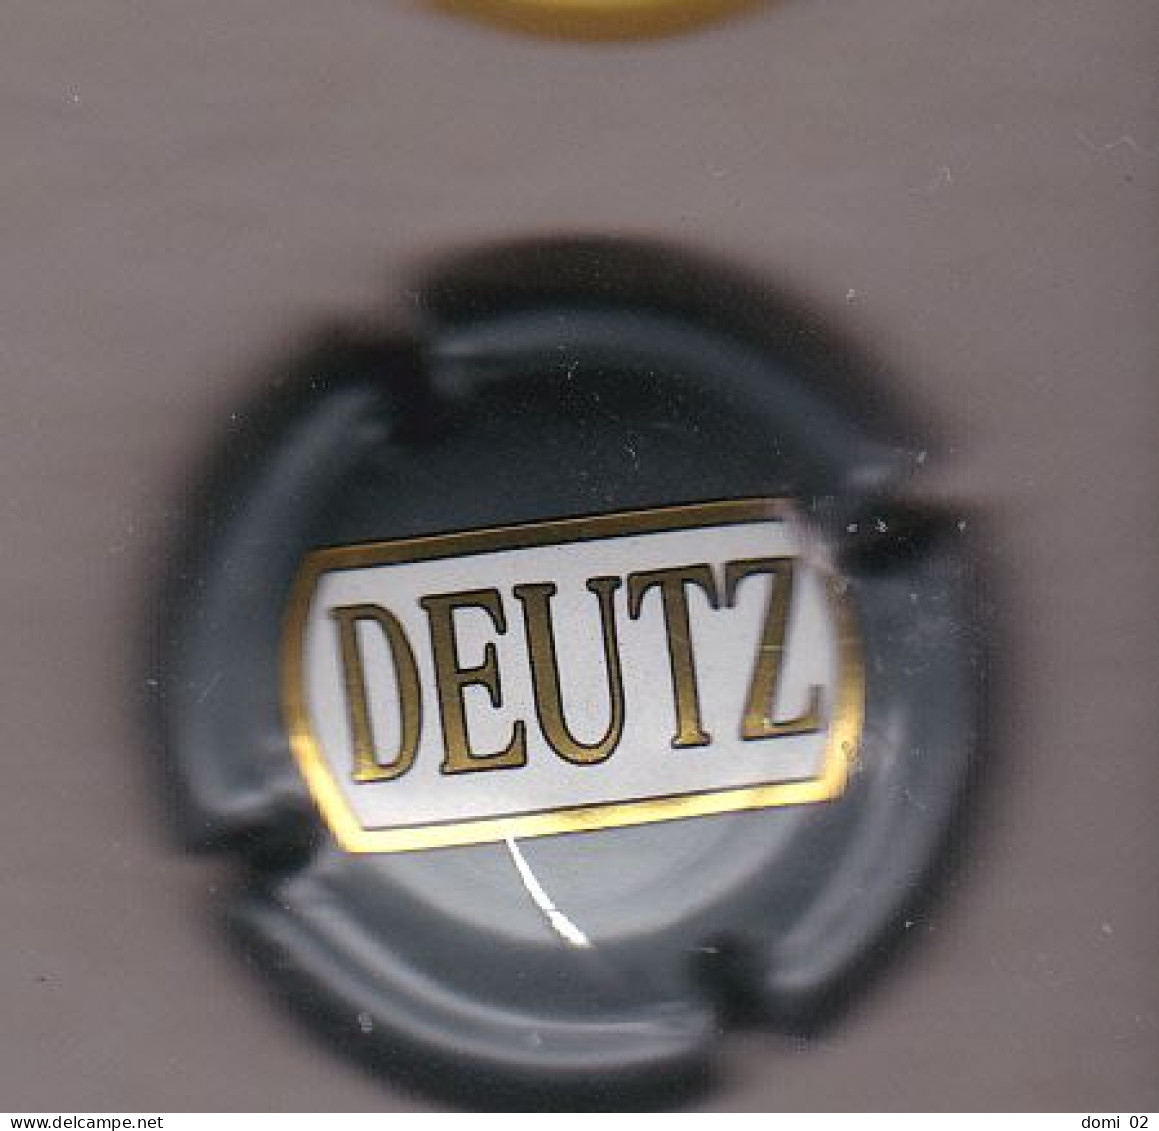 CAPSULE CHAMPAGNE DEUTZ - Deutz